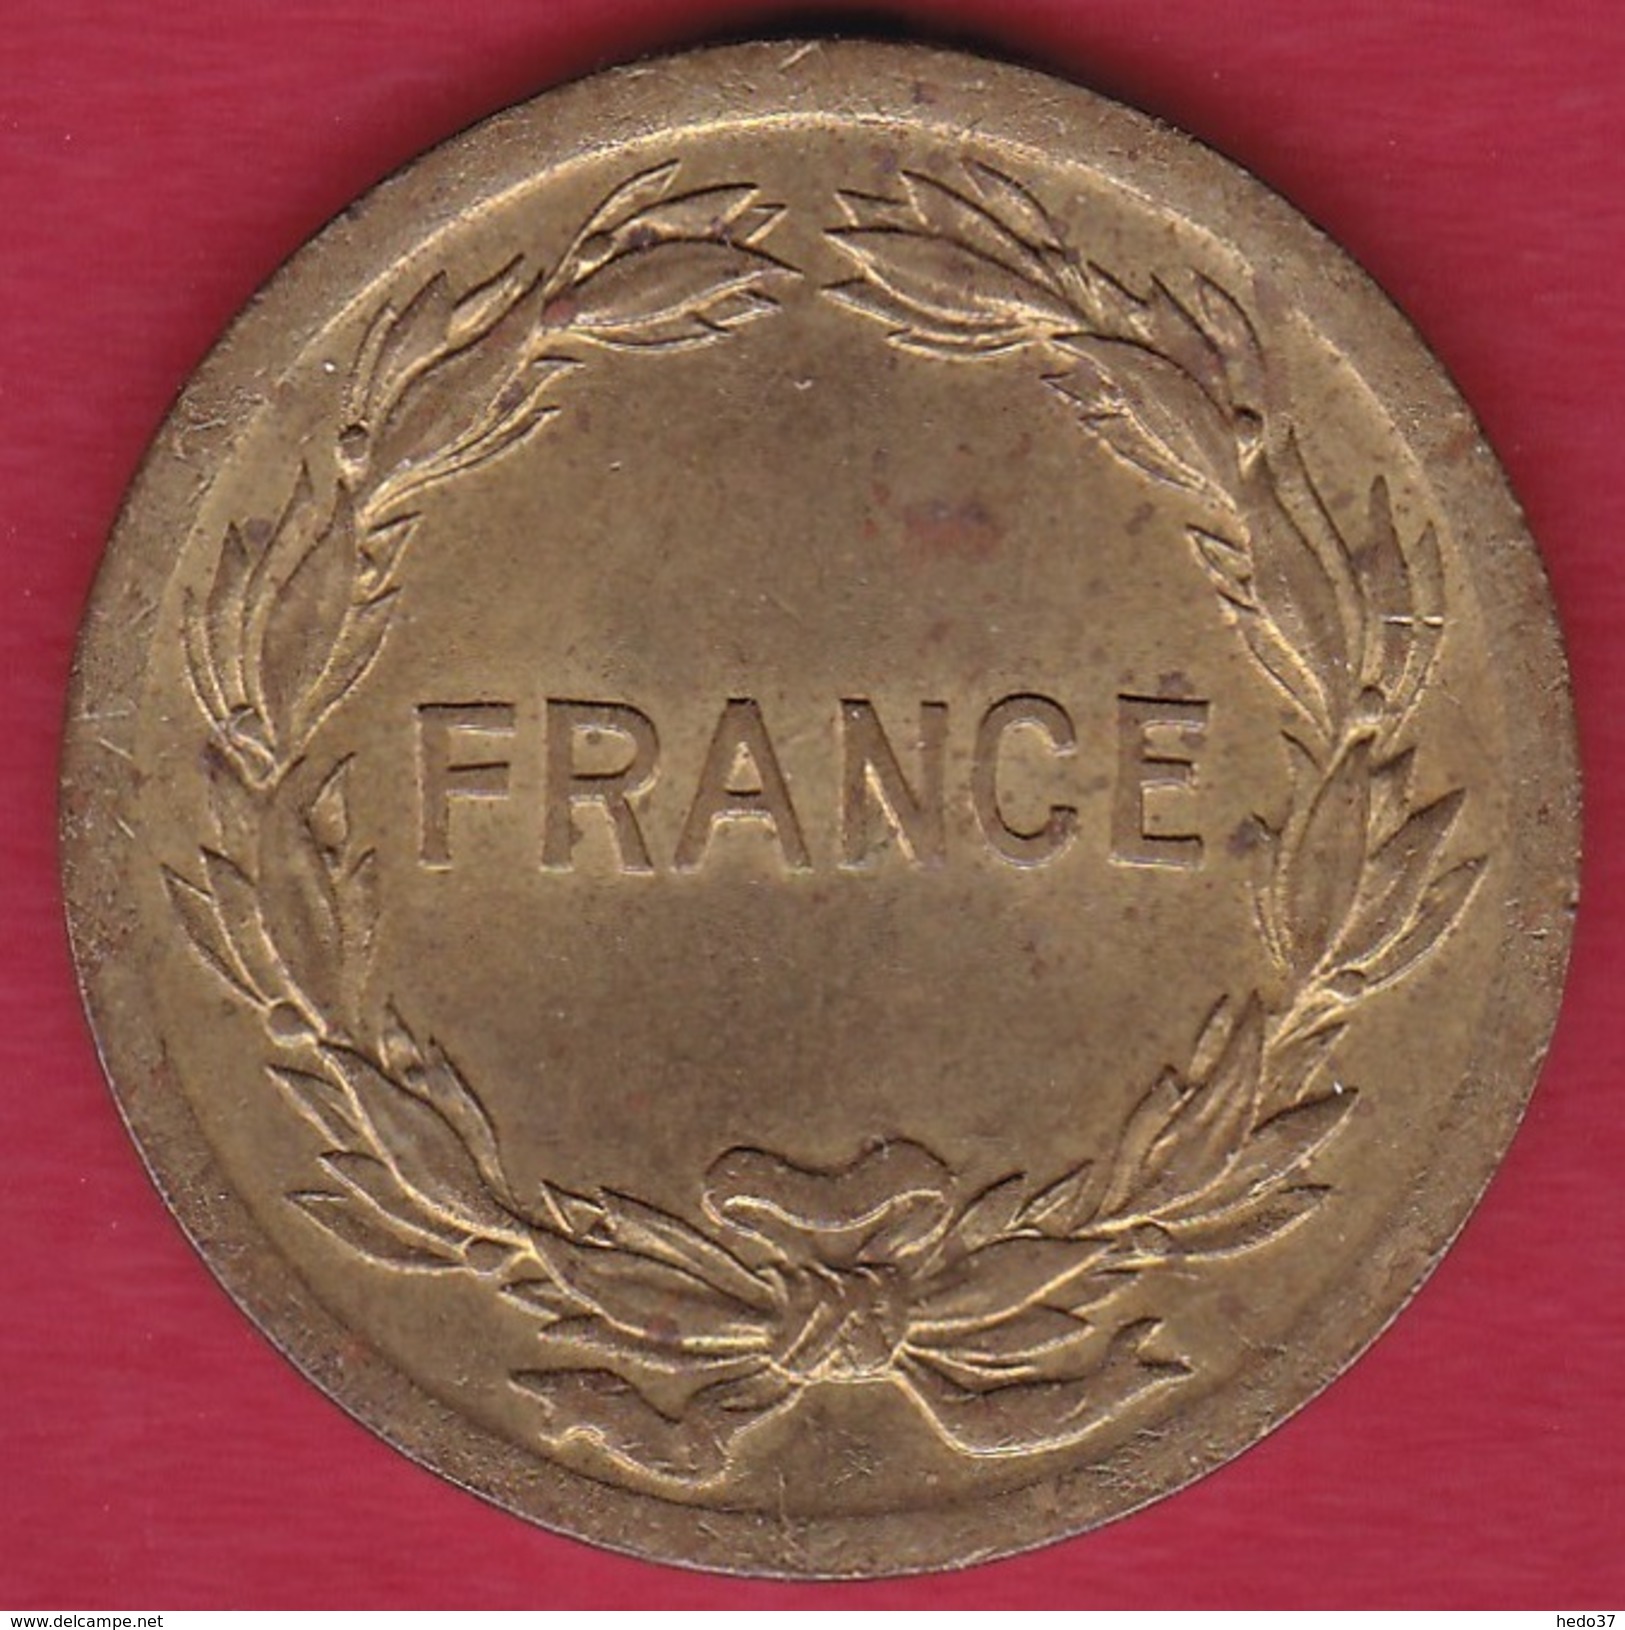 France 2 Francs France Libre - 1944 - TTB+ - 2 Francs